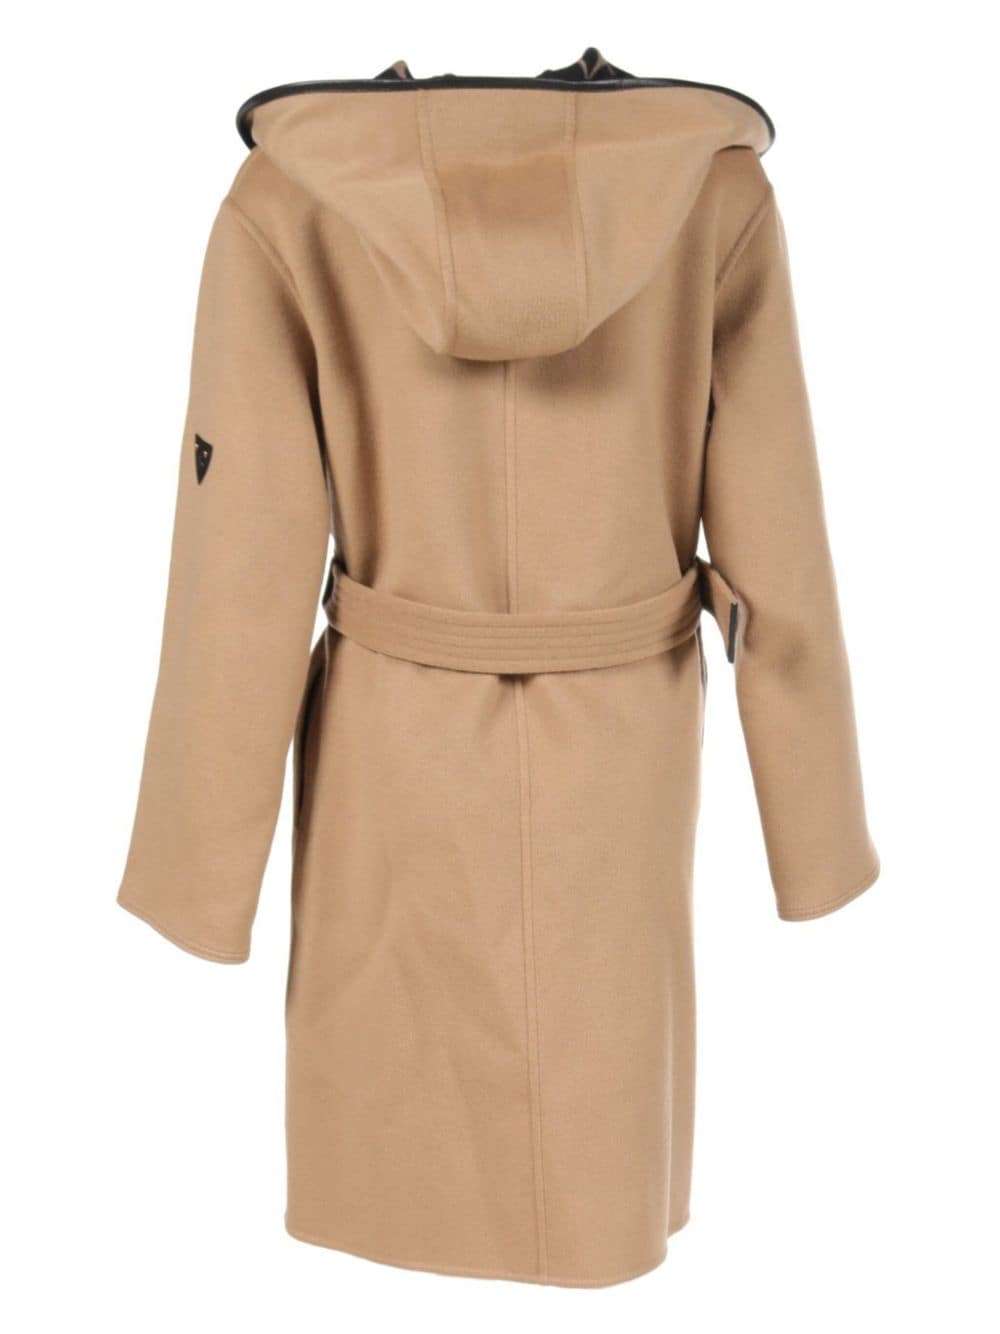 Louis Vuitton Pre-Owned 2010s monogram wool belted coat - Beige